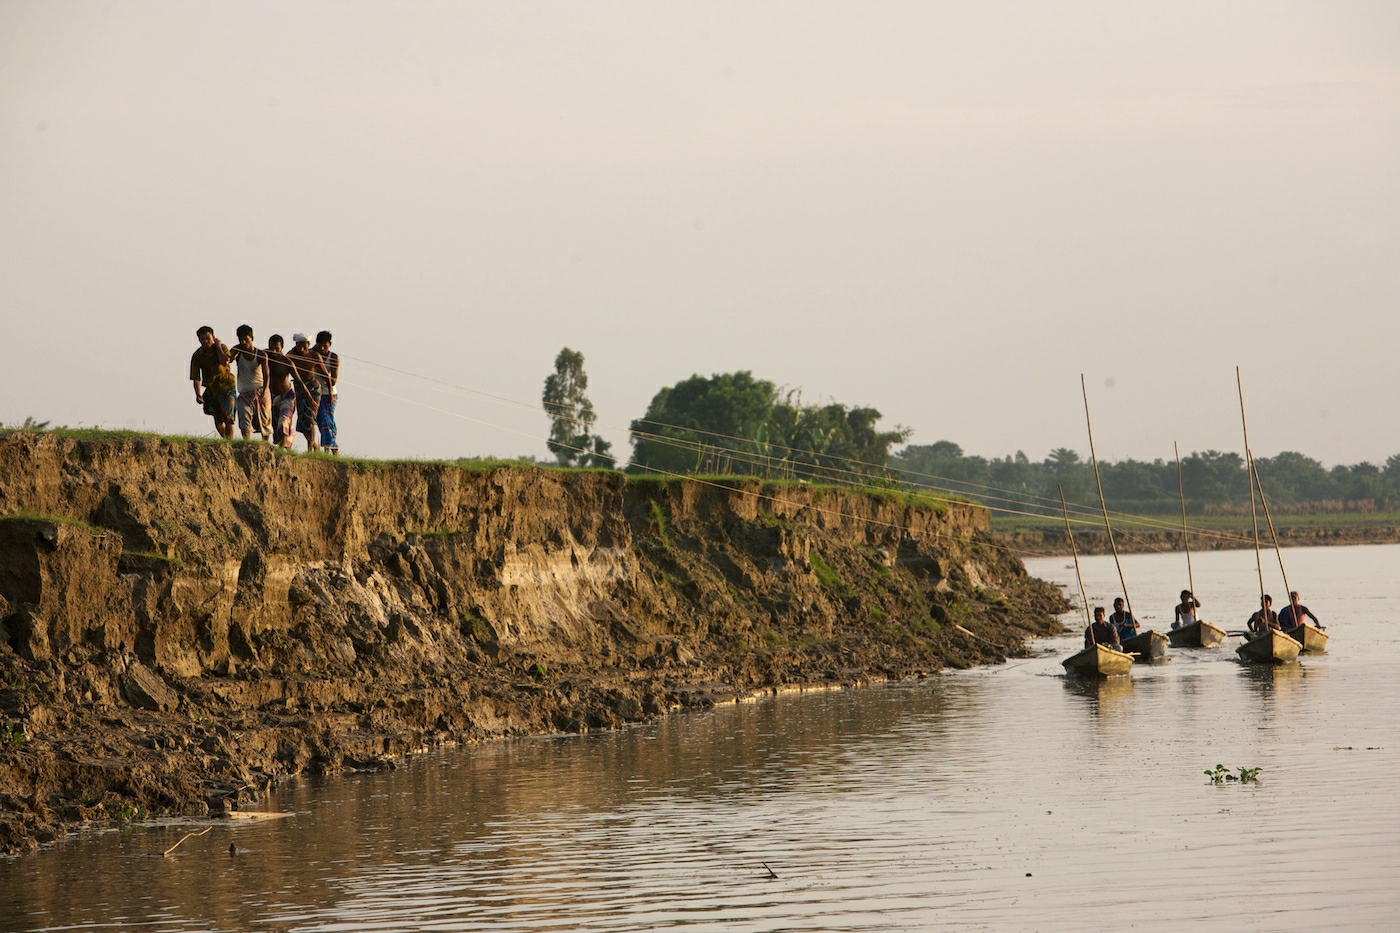 Flodbankserosion är vanligt i Bangladesh. ©Sujan Map/IPS